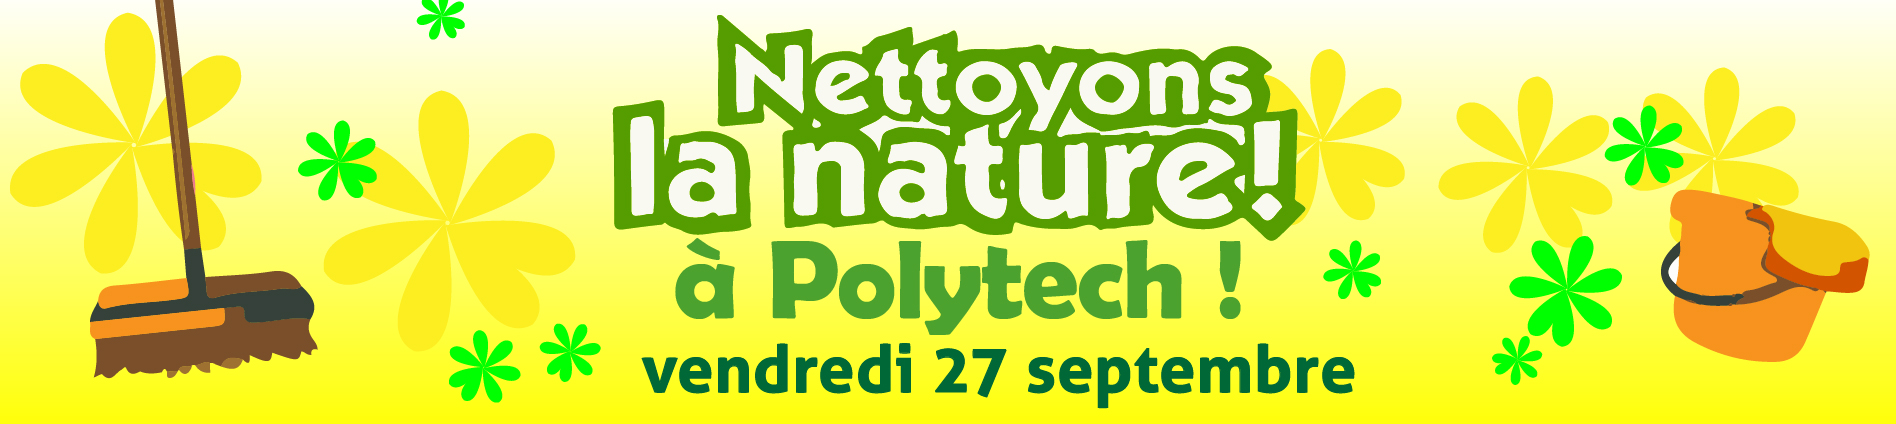 Nettoyons la Nature à Polytech vendredi 27 septembre 2019